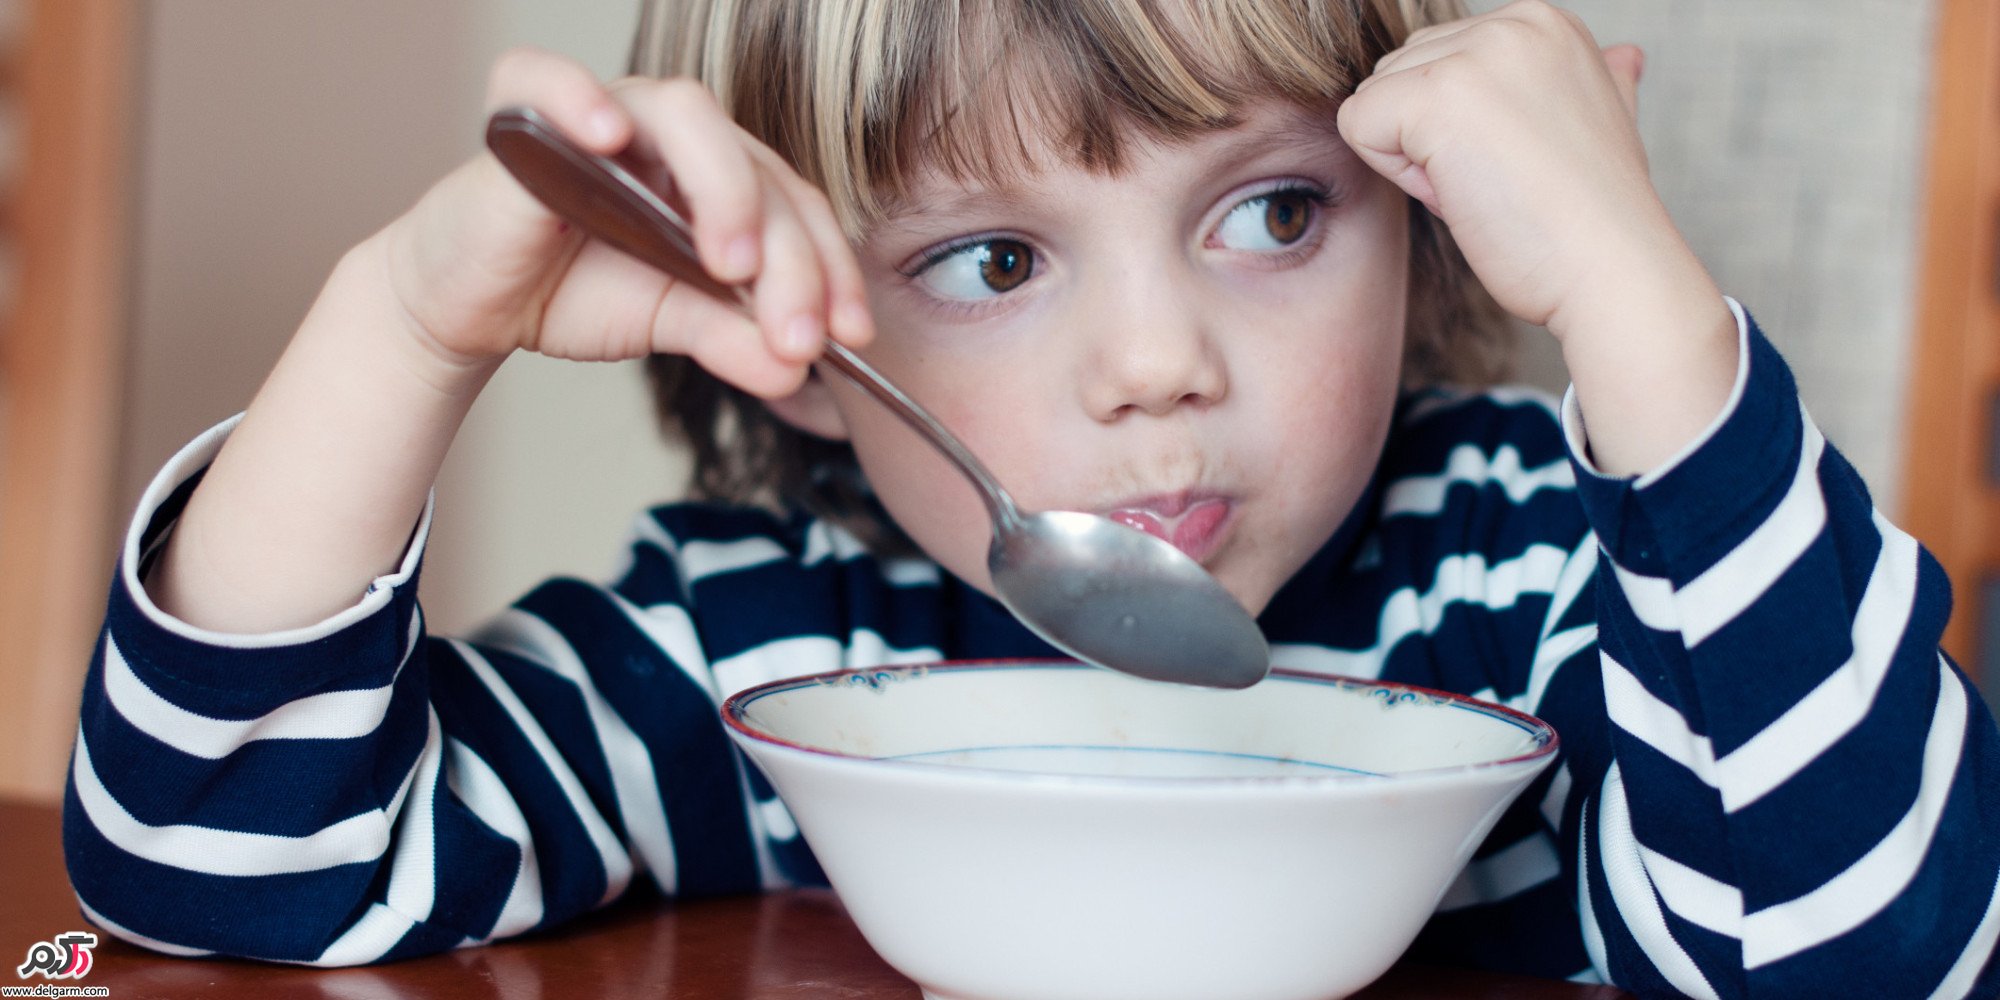  نجویدن غذا در کودکان، مشکل گوارشی است؟